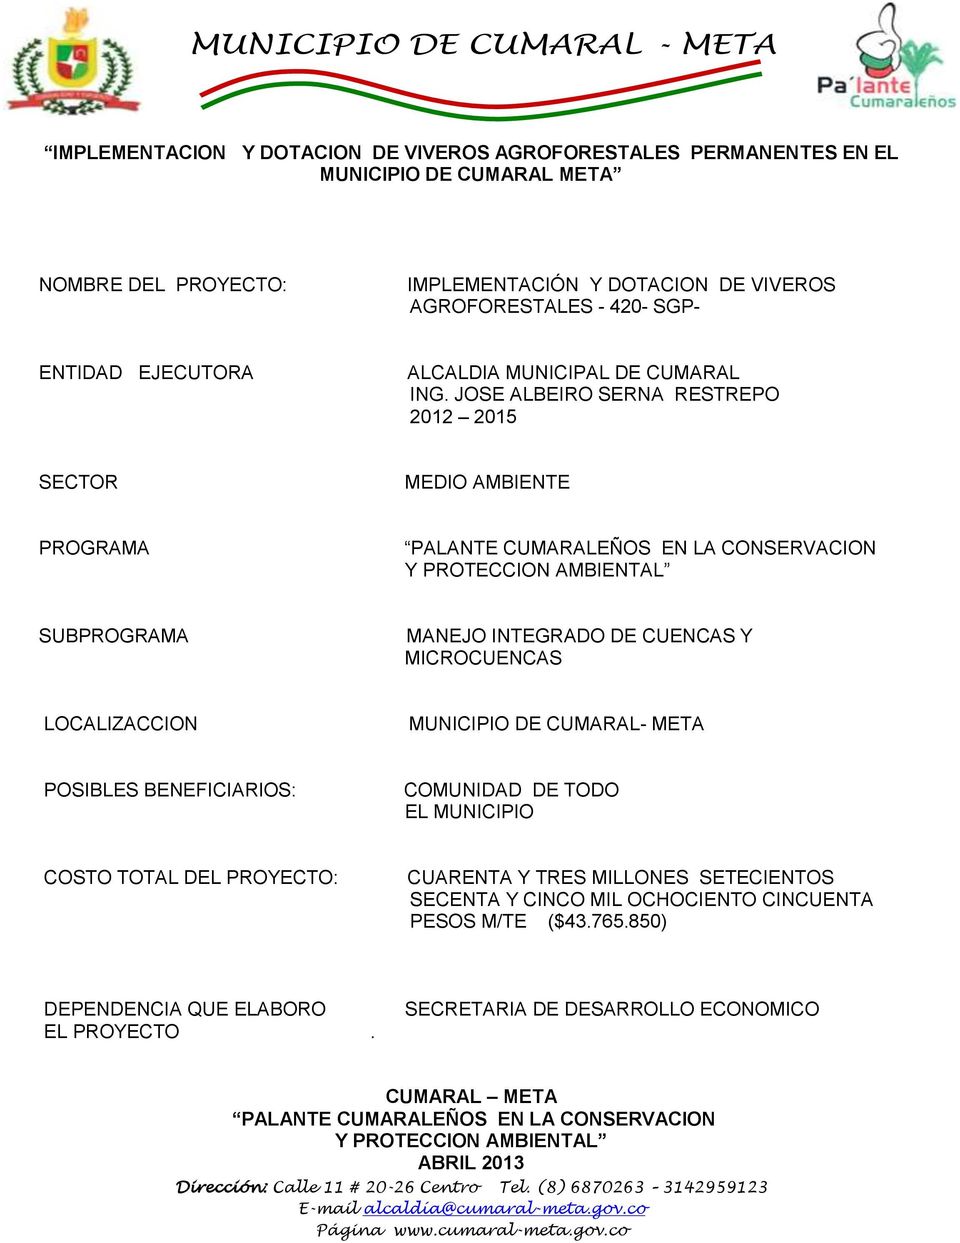 JOSE ALBEIRO SERNA RESTREPO 2012 2015 SECTOR MEDIO AMBIENTE PROGRAMA PALANTE CUMARALEÑOS EN LA CONSERVACION Y PROTECCION AMBIENTAL SUBPROGRAMA MANEJO INTEGRADO DE CUENCAS Y MICROCUENCAS LOCALIZACCION